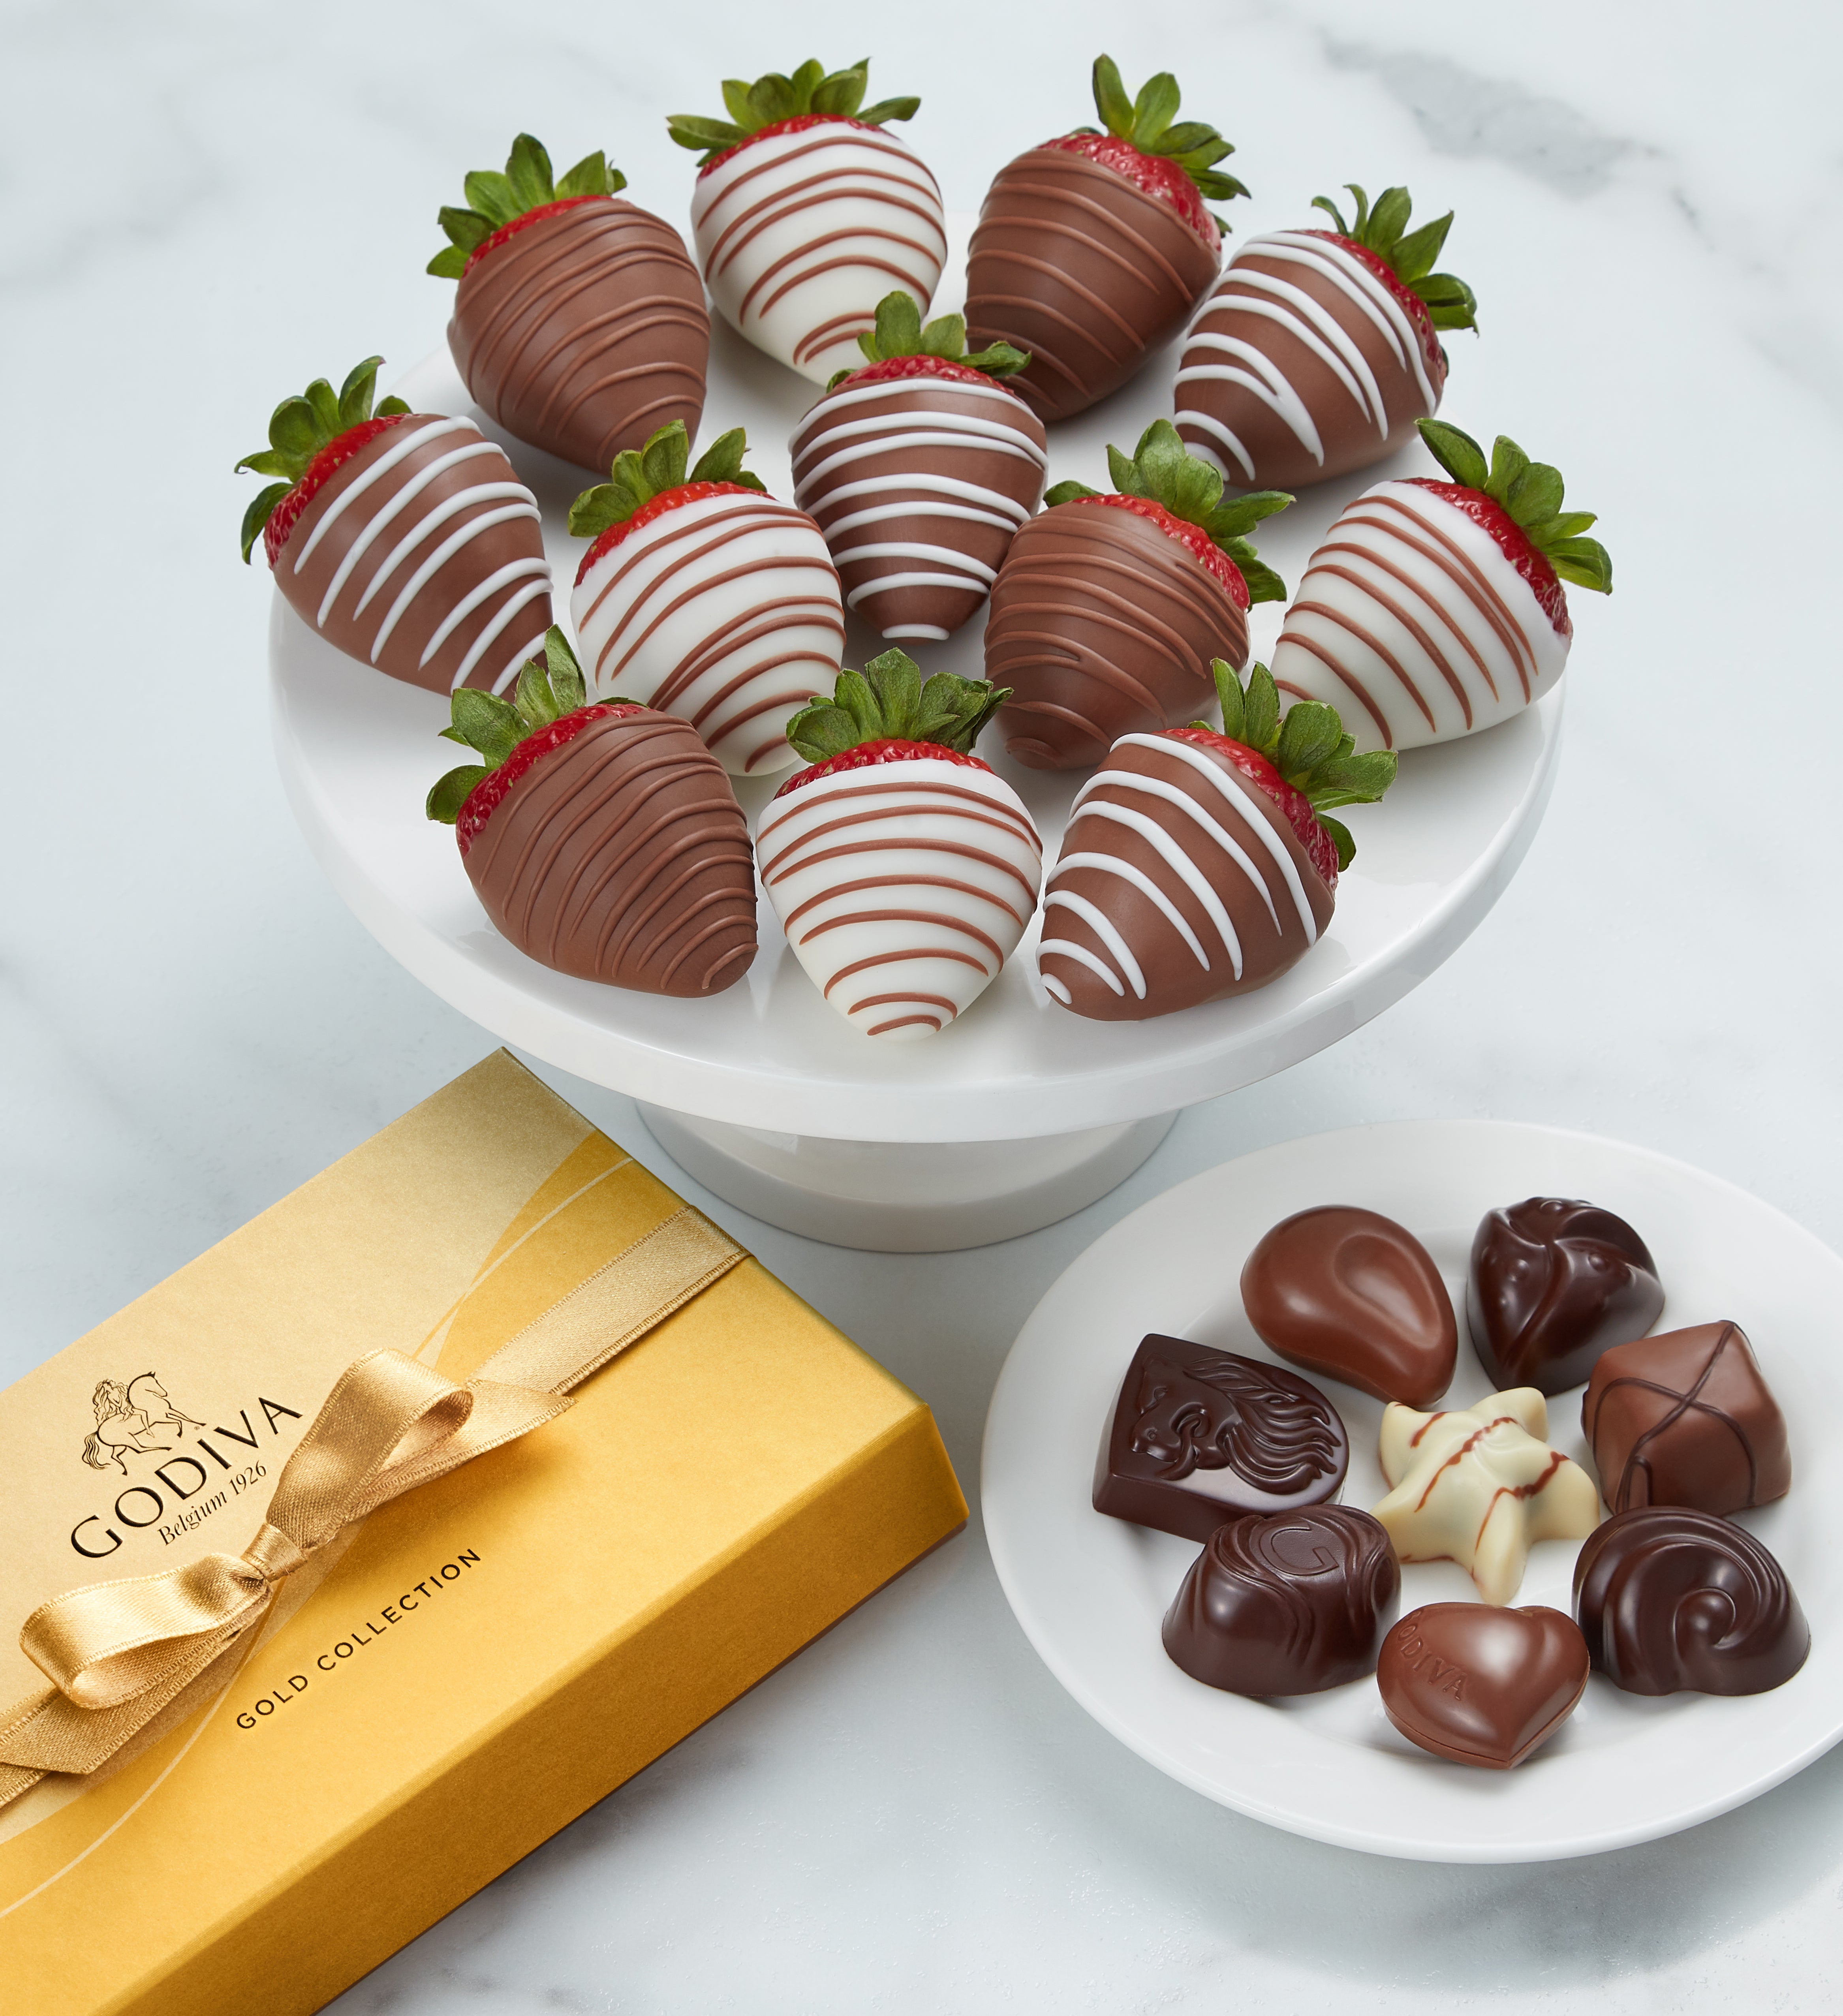 Godiva Ballotin & Chocolate Covered Strawberries